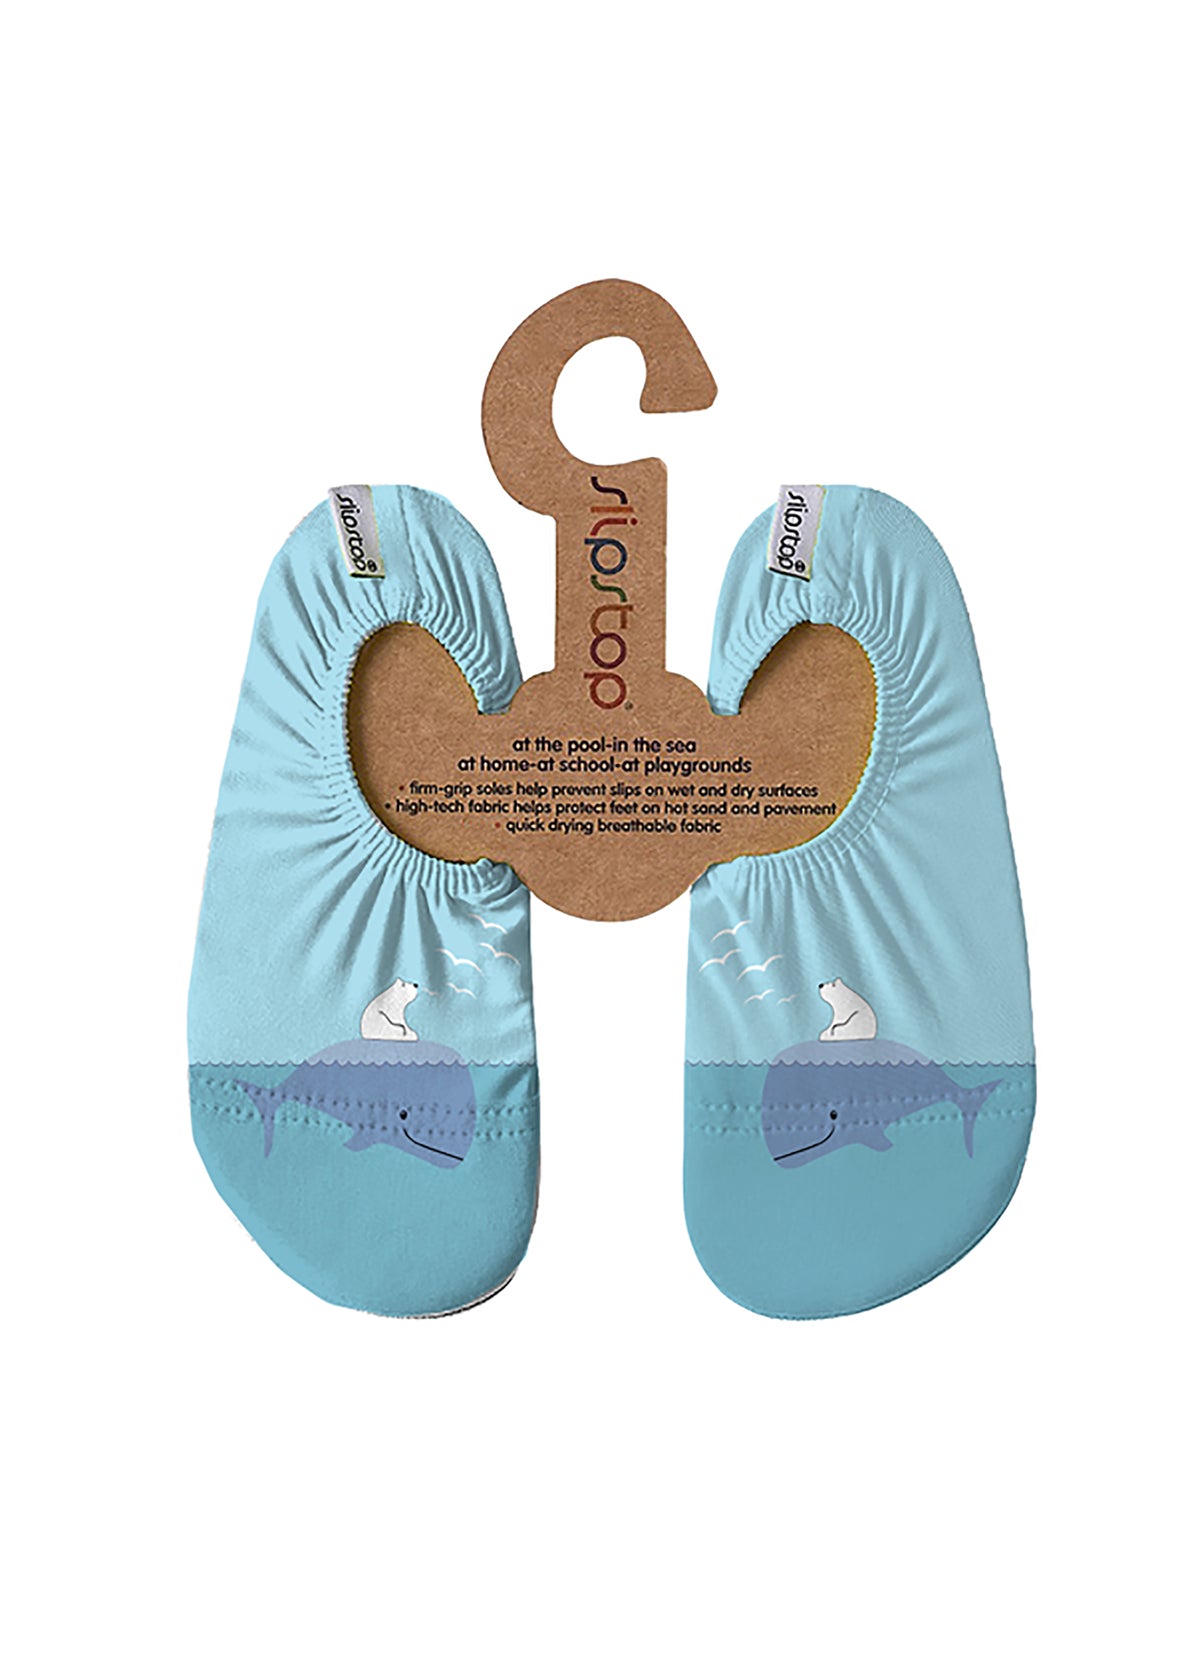 Children's slippers - Alaska, whale, light blue